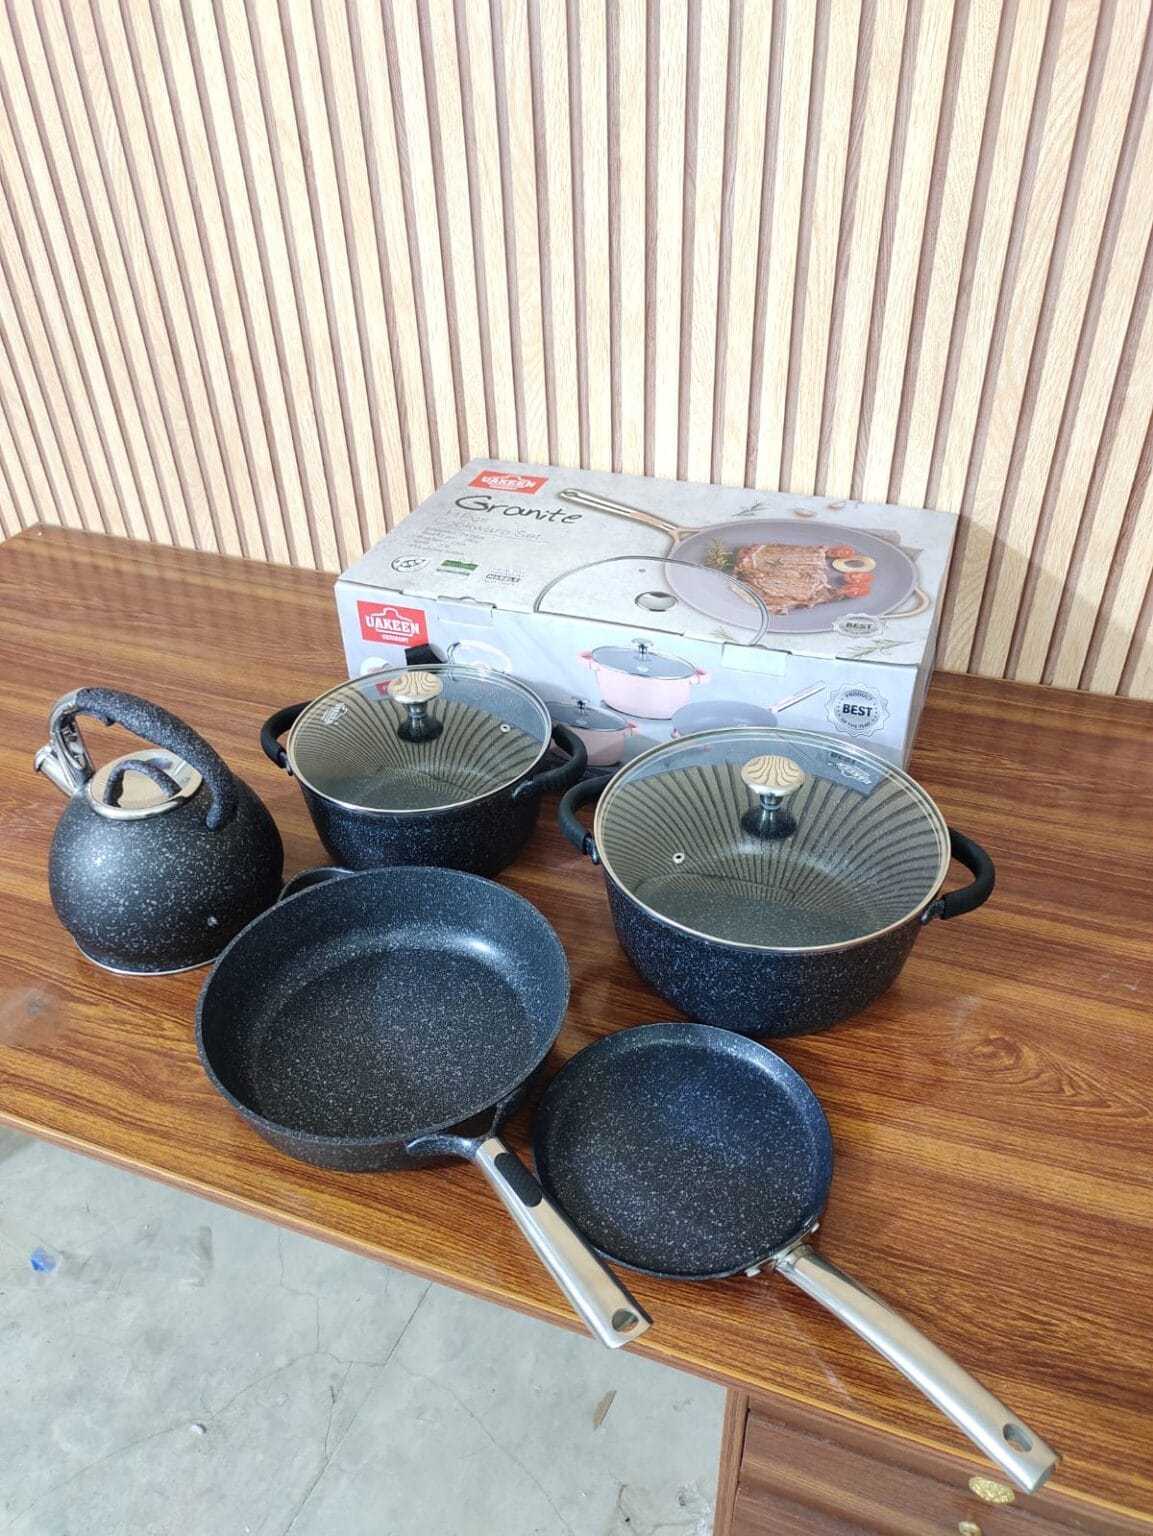 UAKEEN German 11 Piece Granite Cookware Set